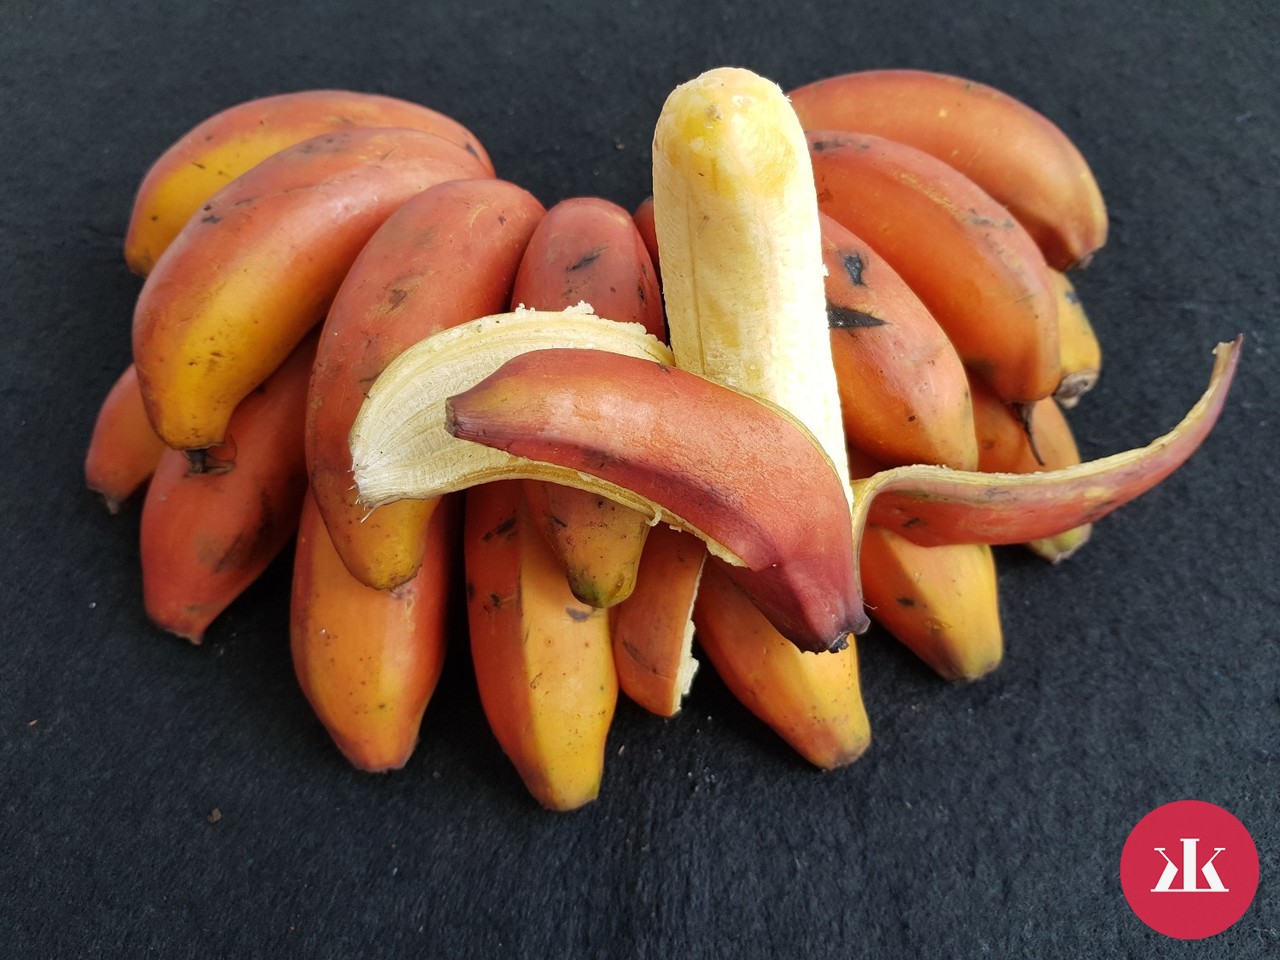 červený banán účinky